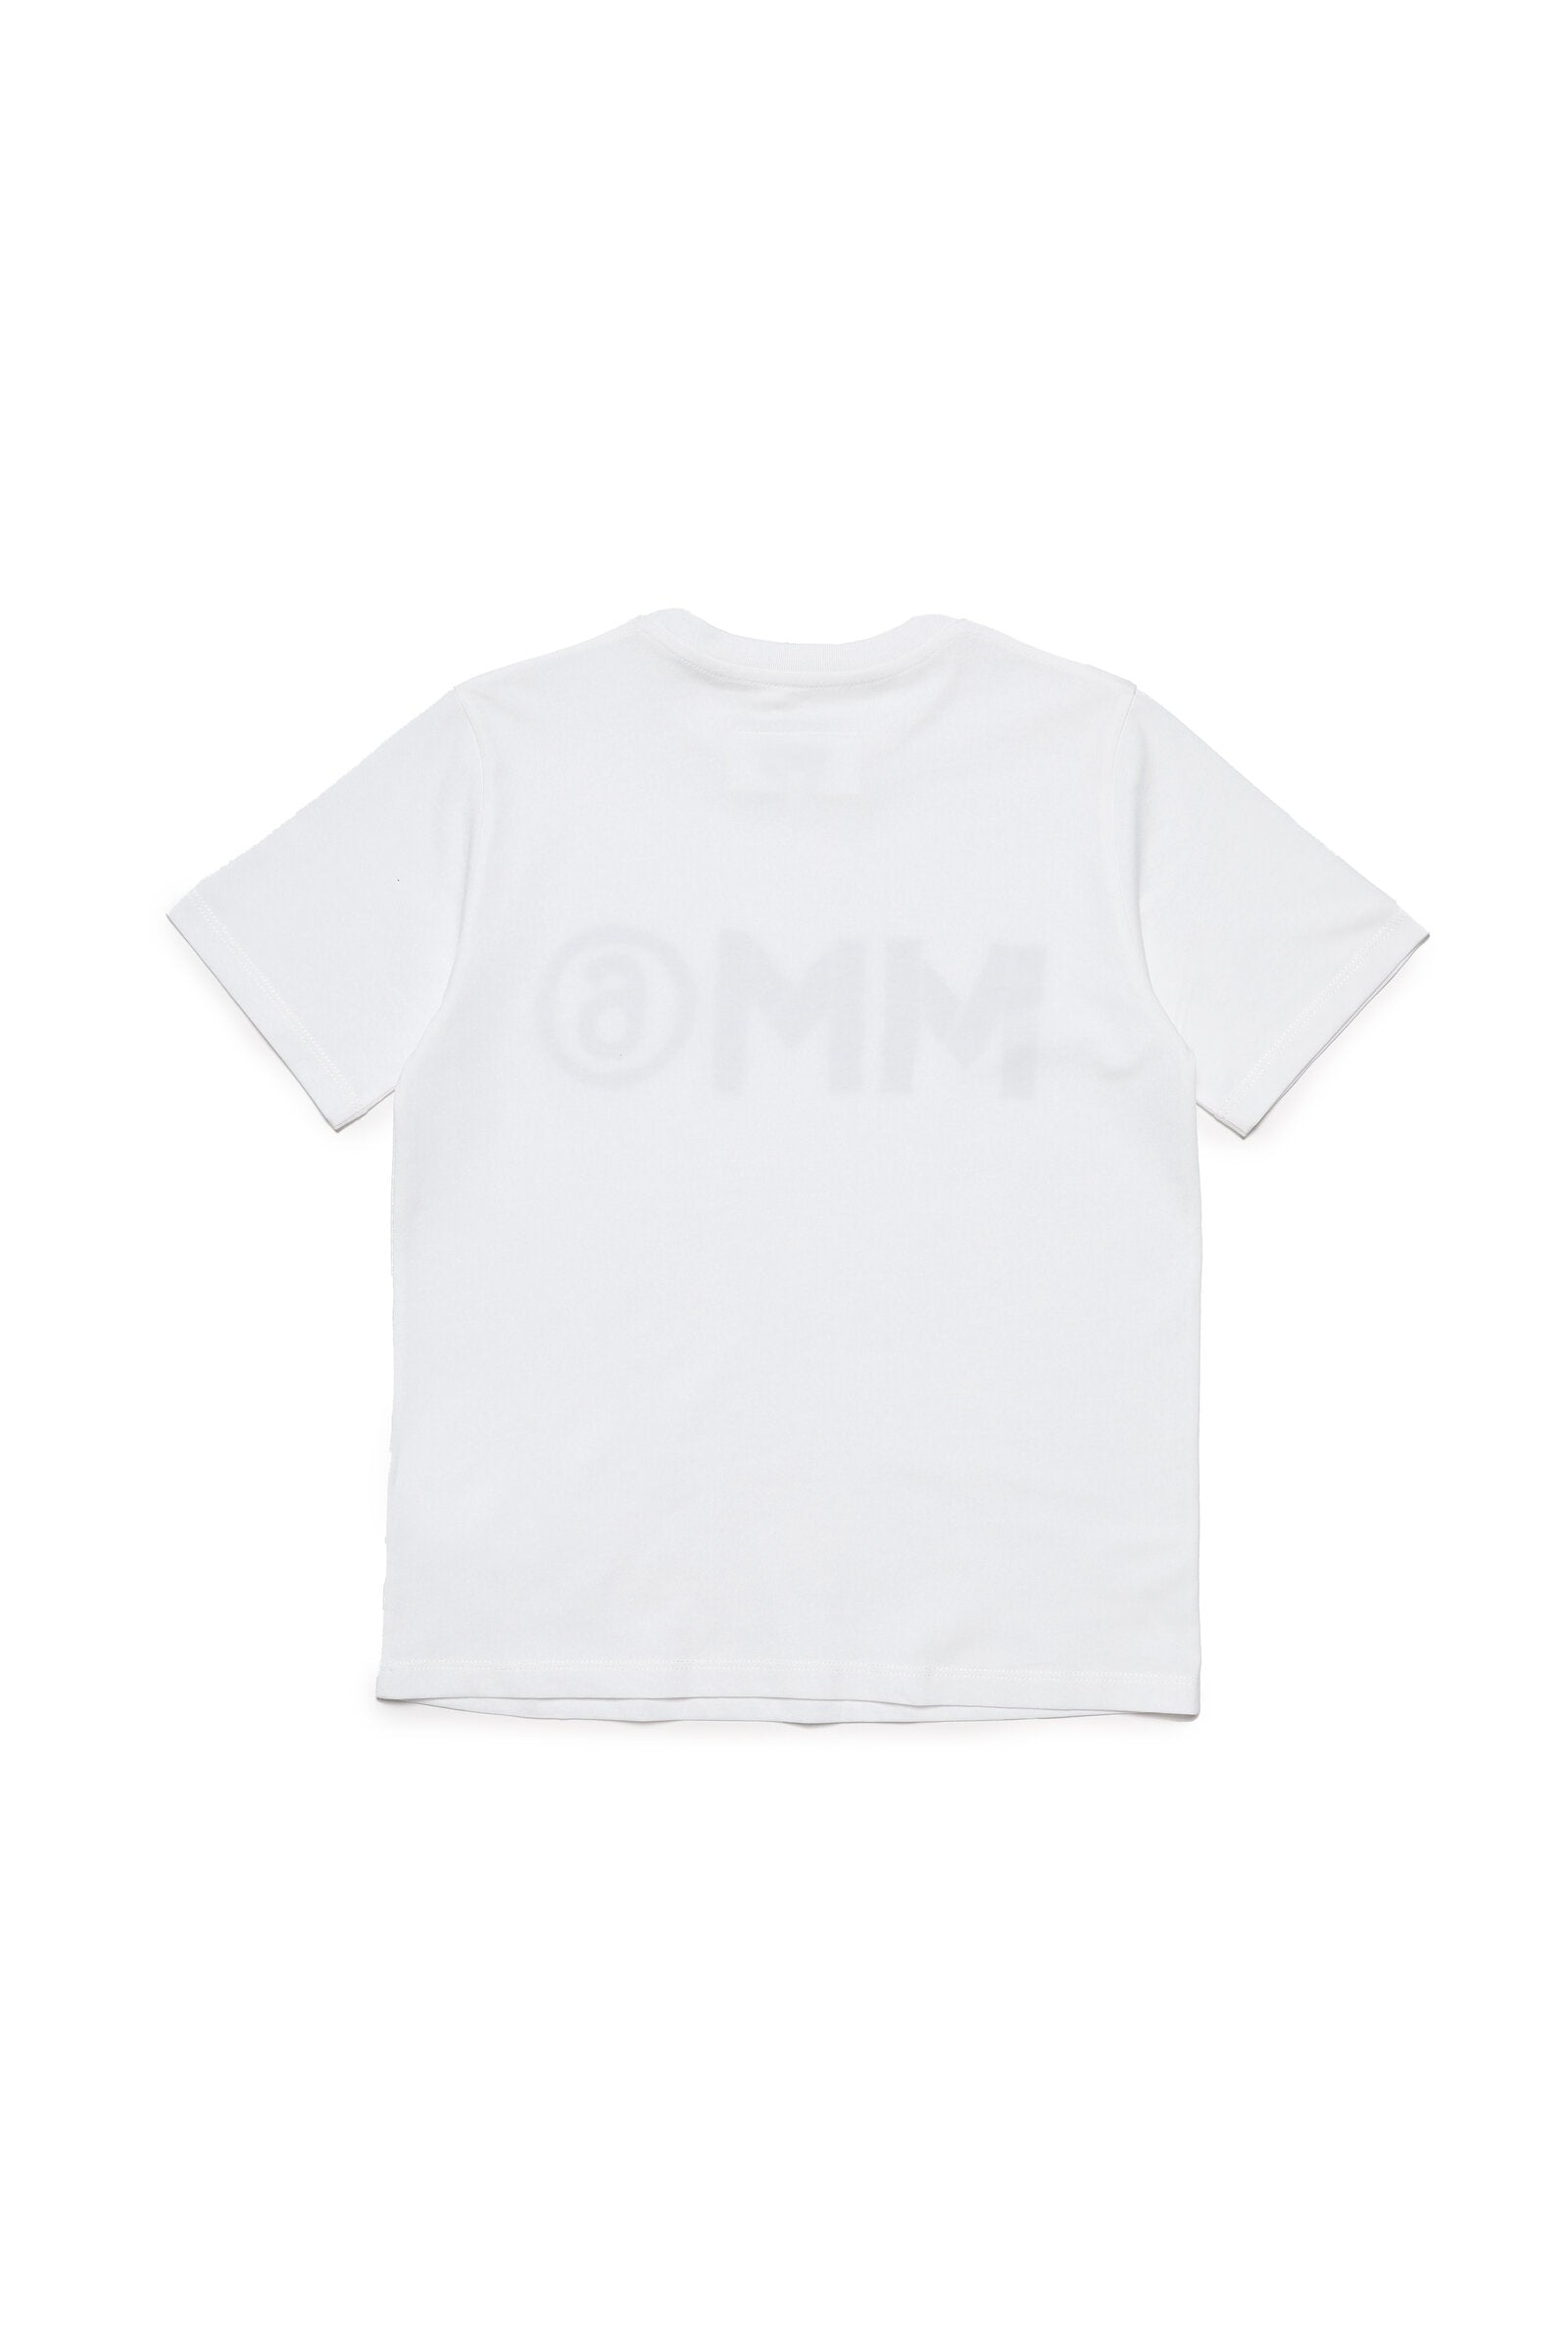 MM6 ティーン向けジャージーTシャツ（ロゴ入り）3枚セット｜BRAVE KID